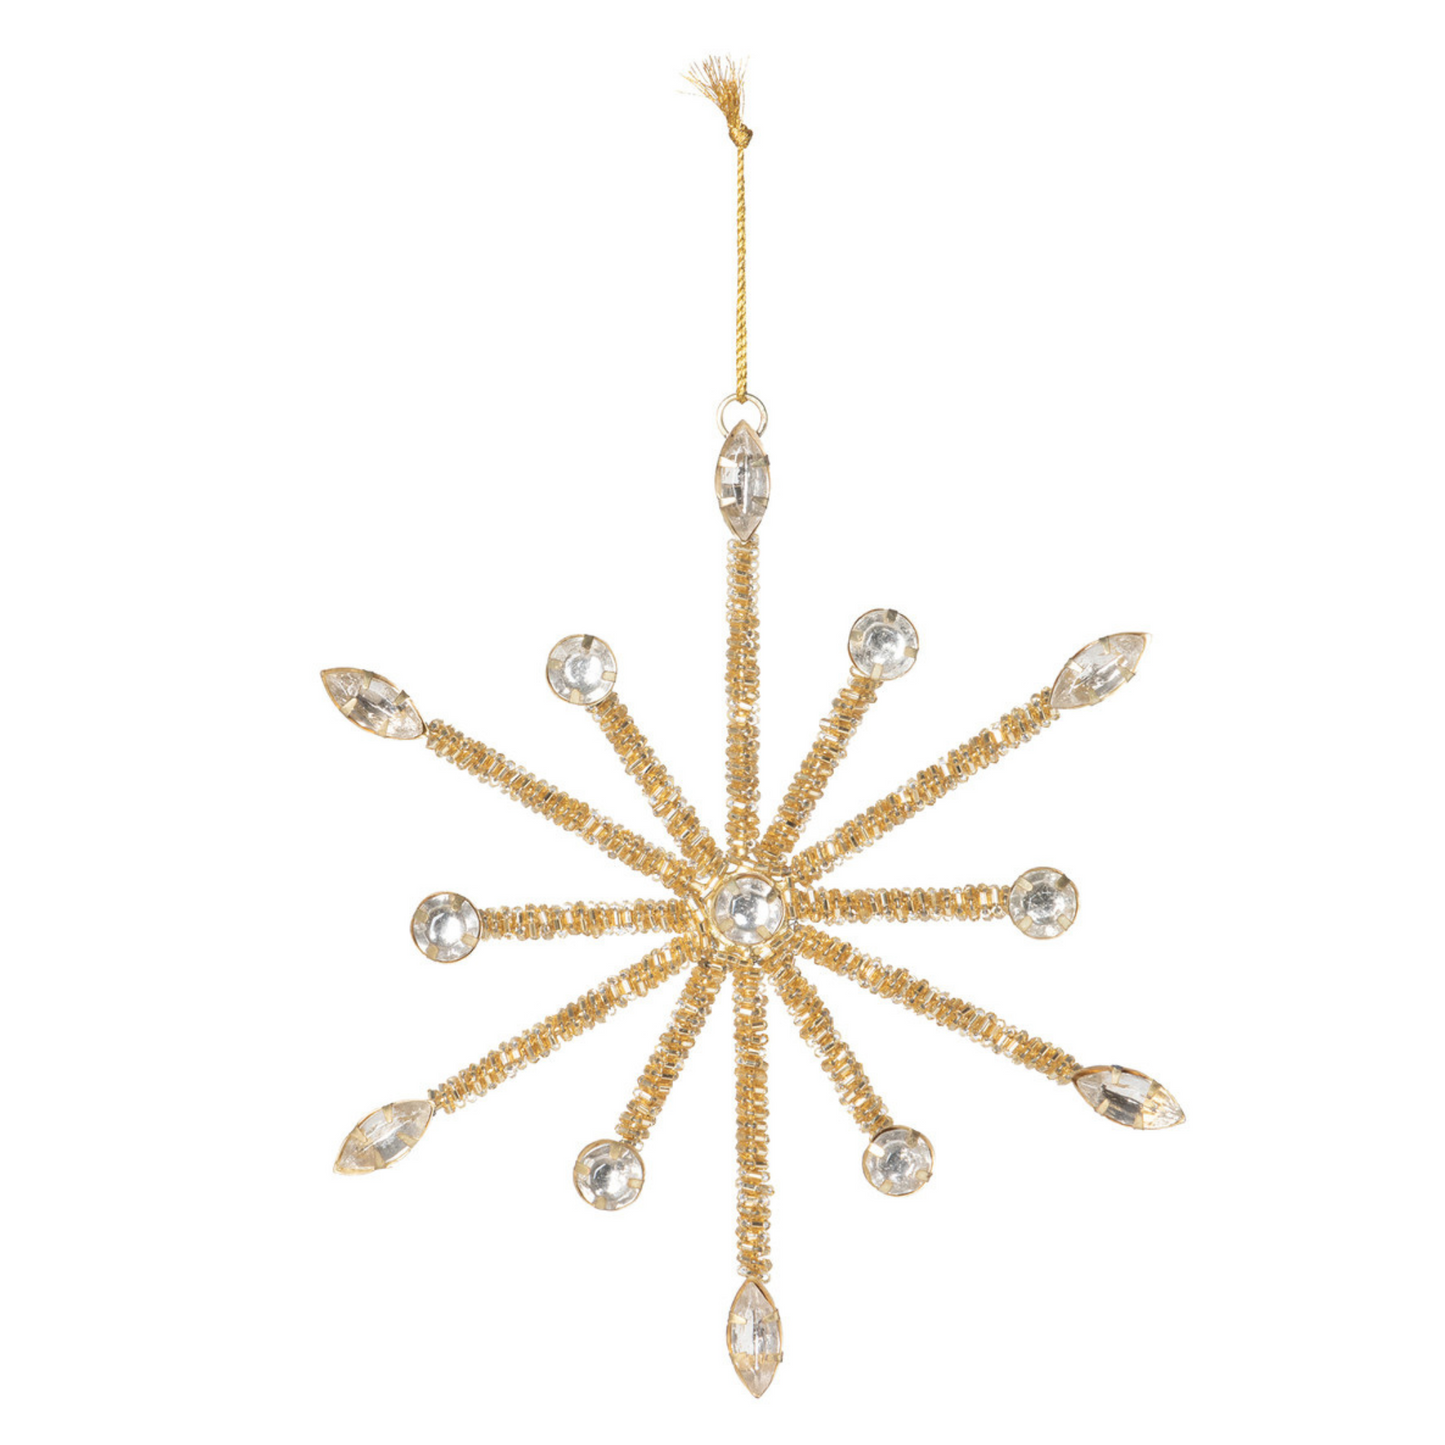 Starburst Gold Beaded Ornament